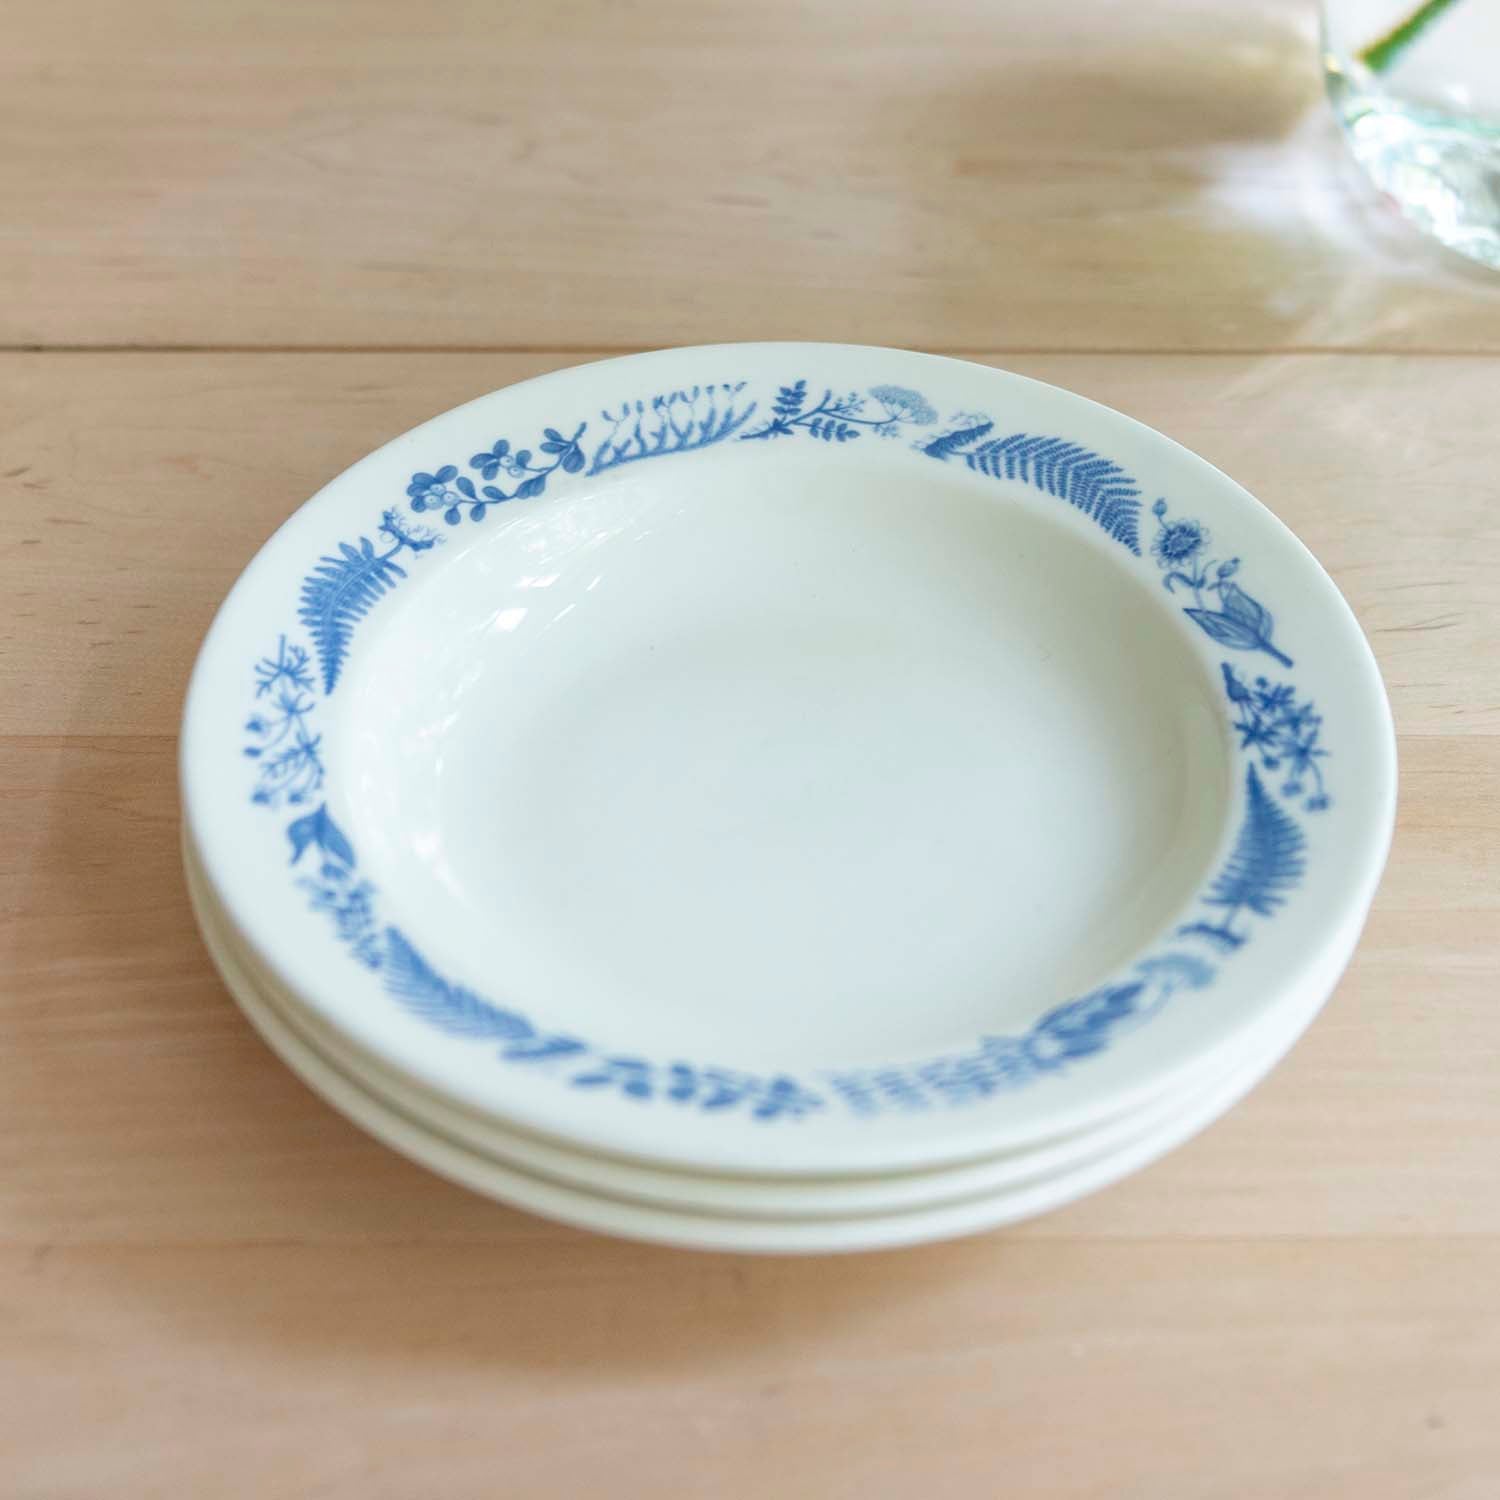 【Vintage】Stig Lindberg Medicinalväxter Soup Plate20cm blue